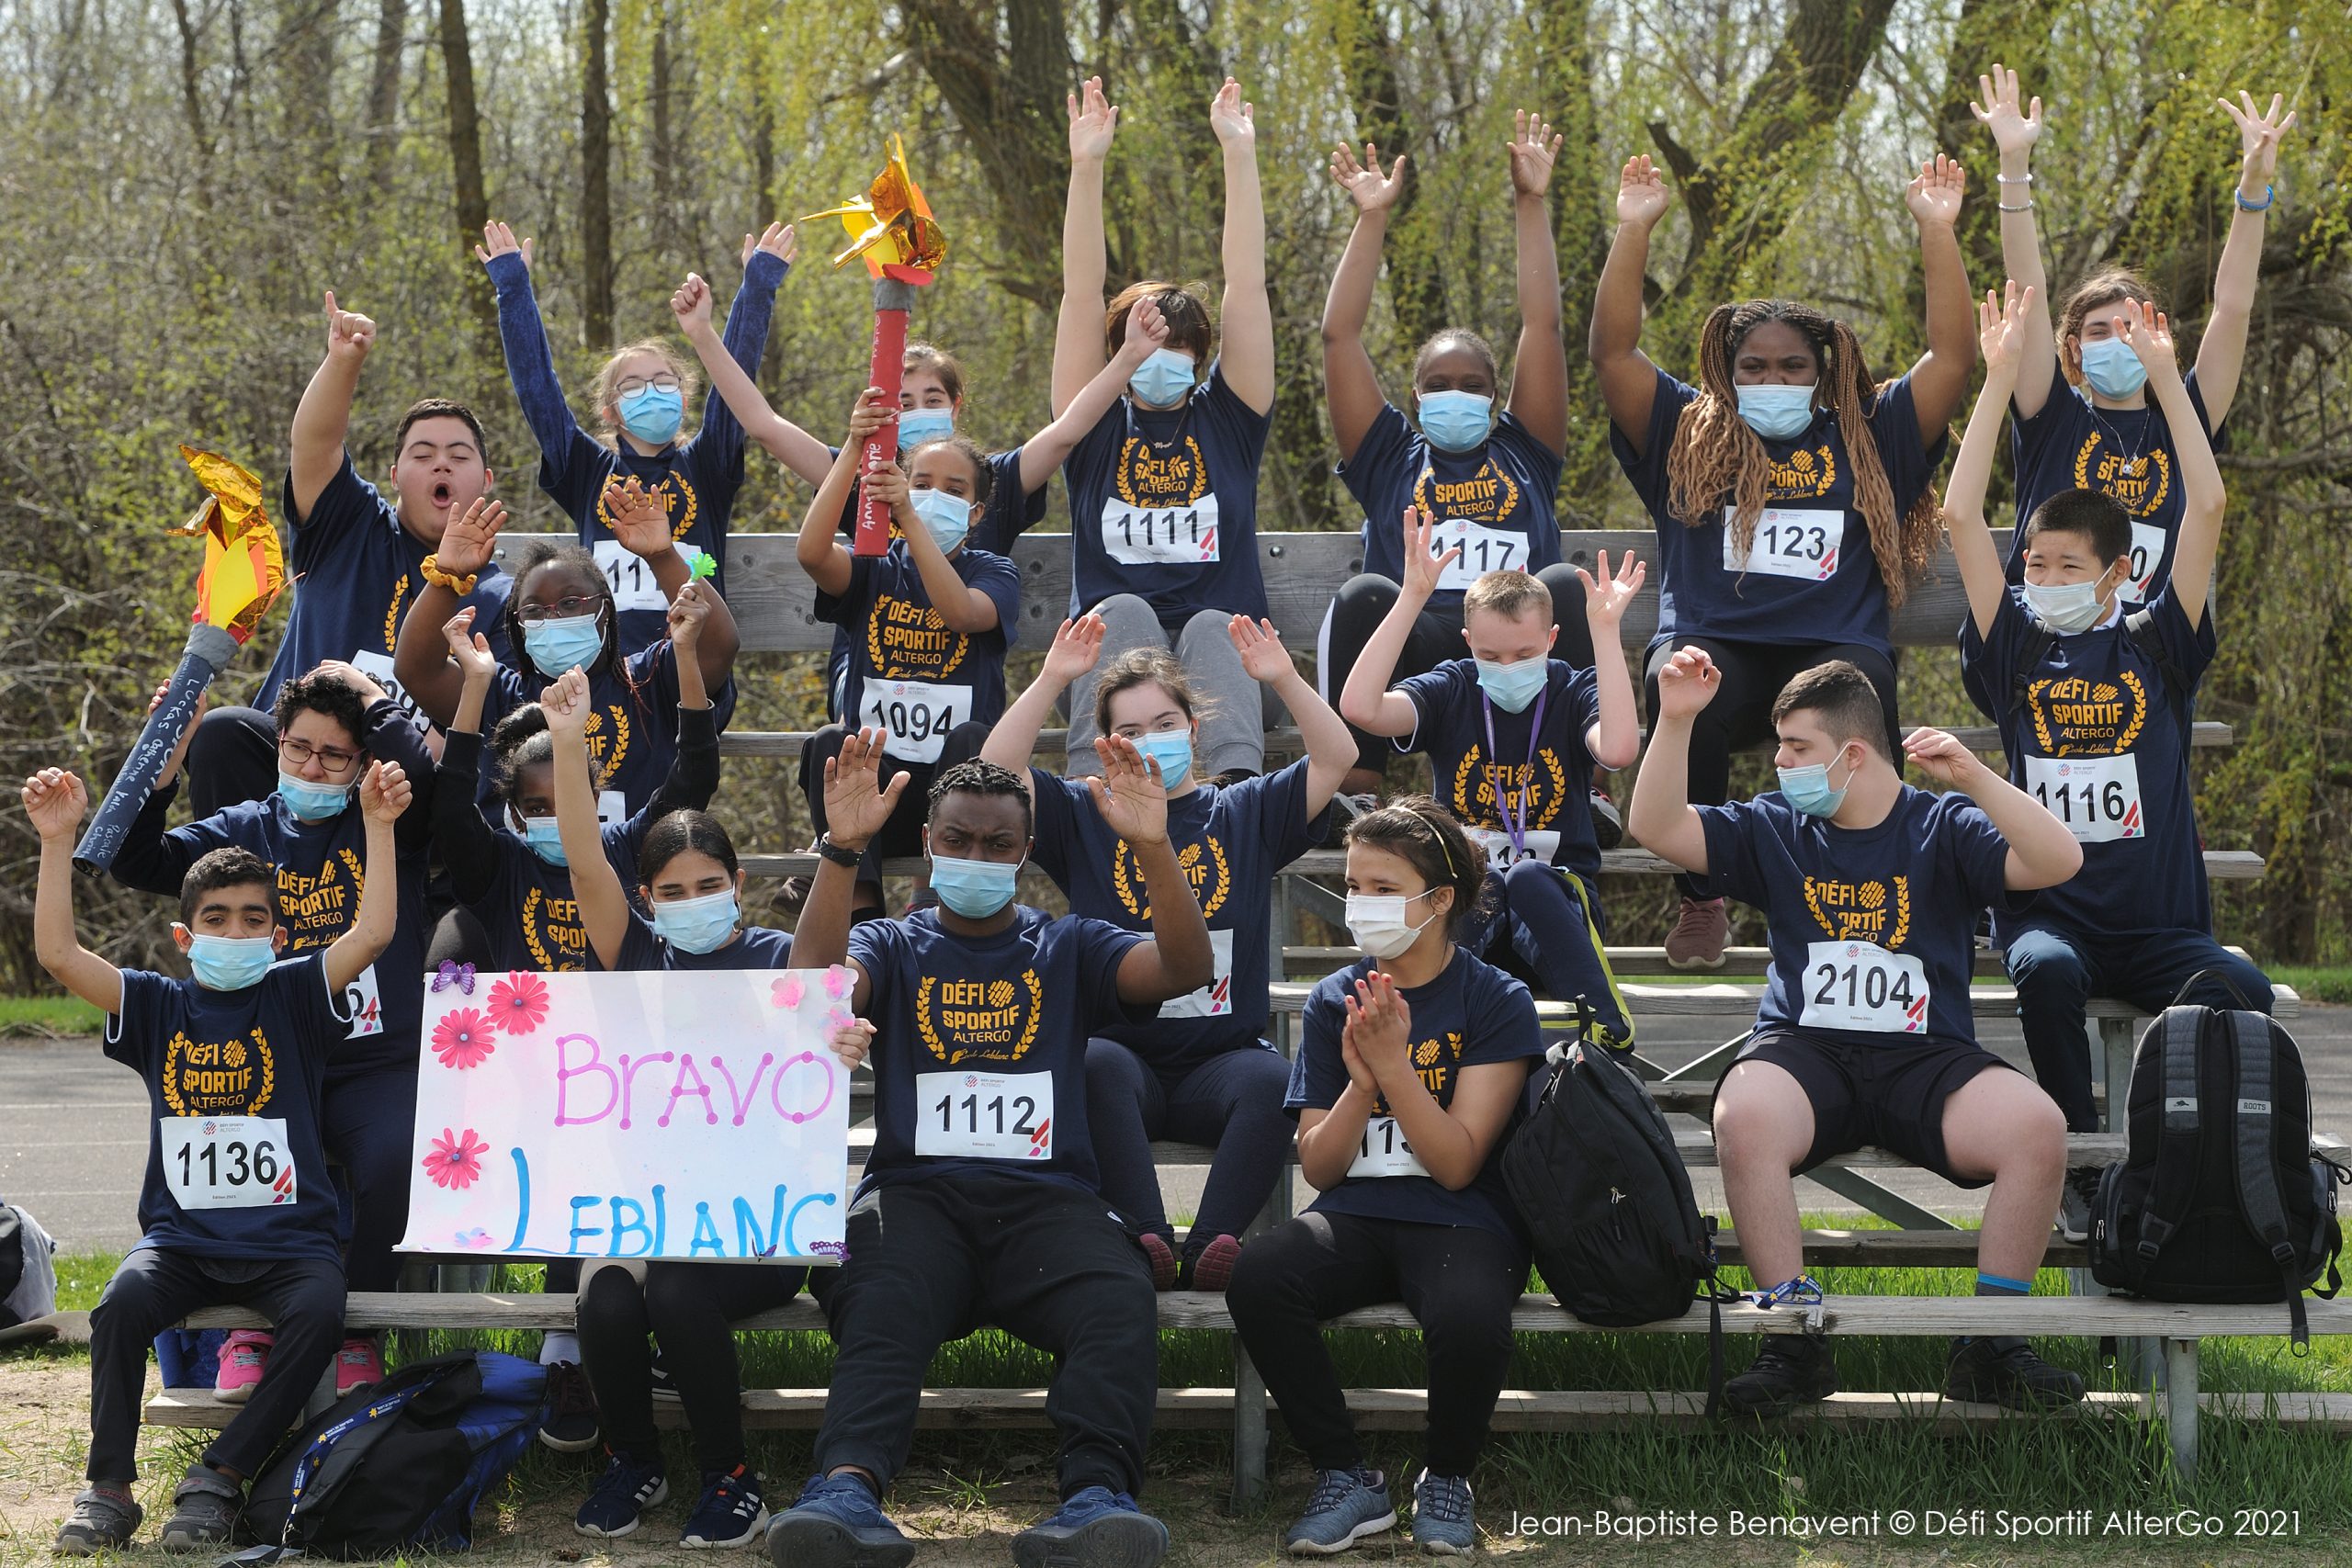 Défi sportif AlterGo 2021 : Un mini-marathon réussi pour les élèves de l’école Leblanc!